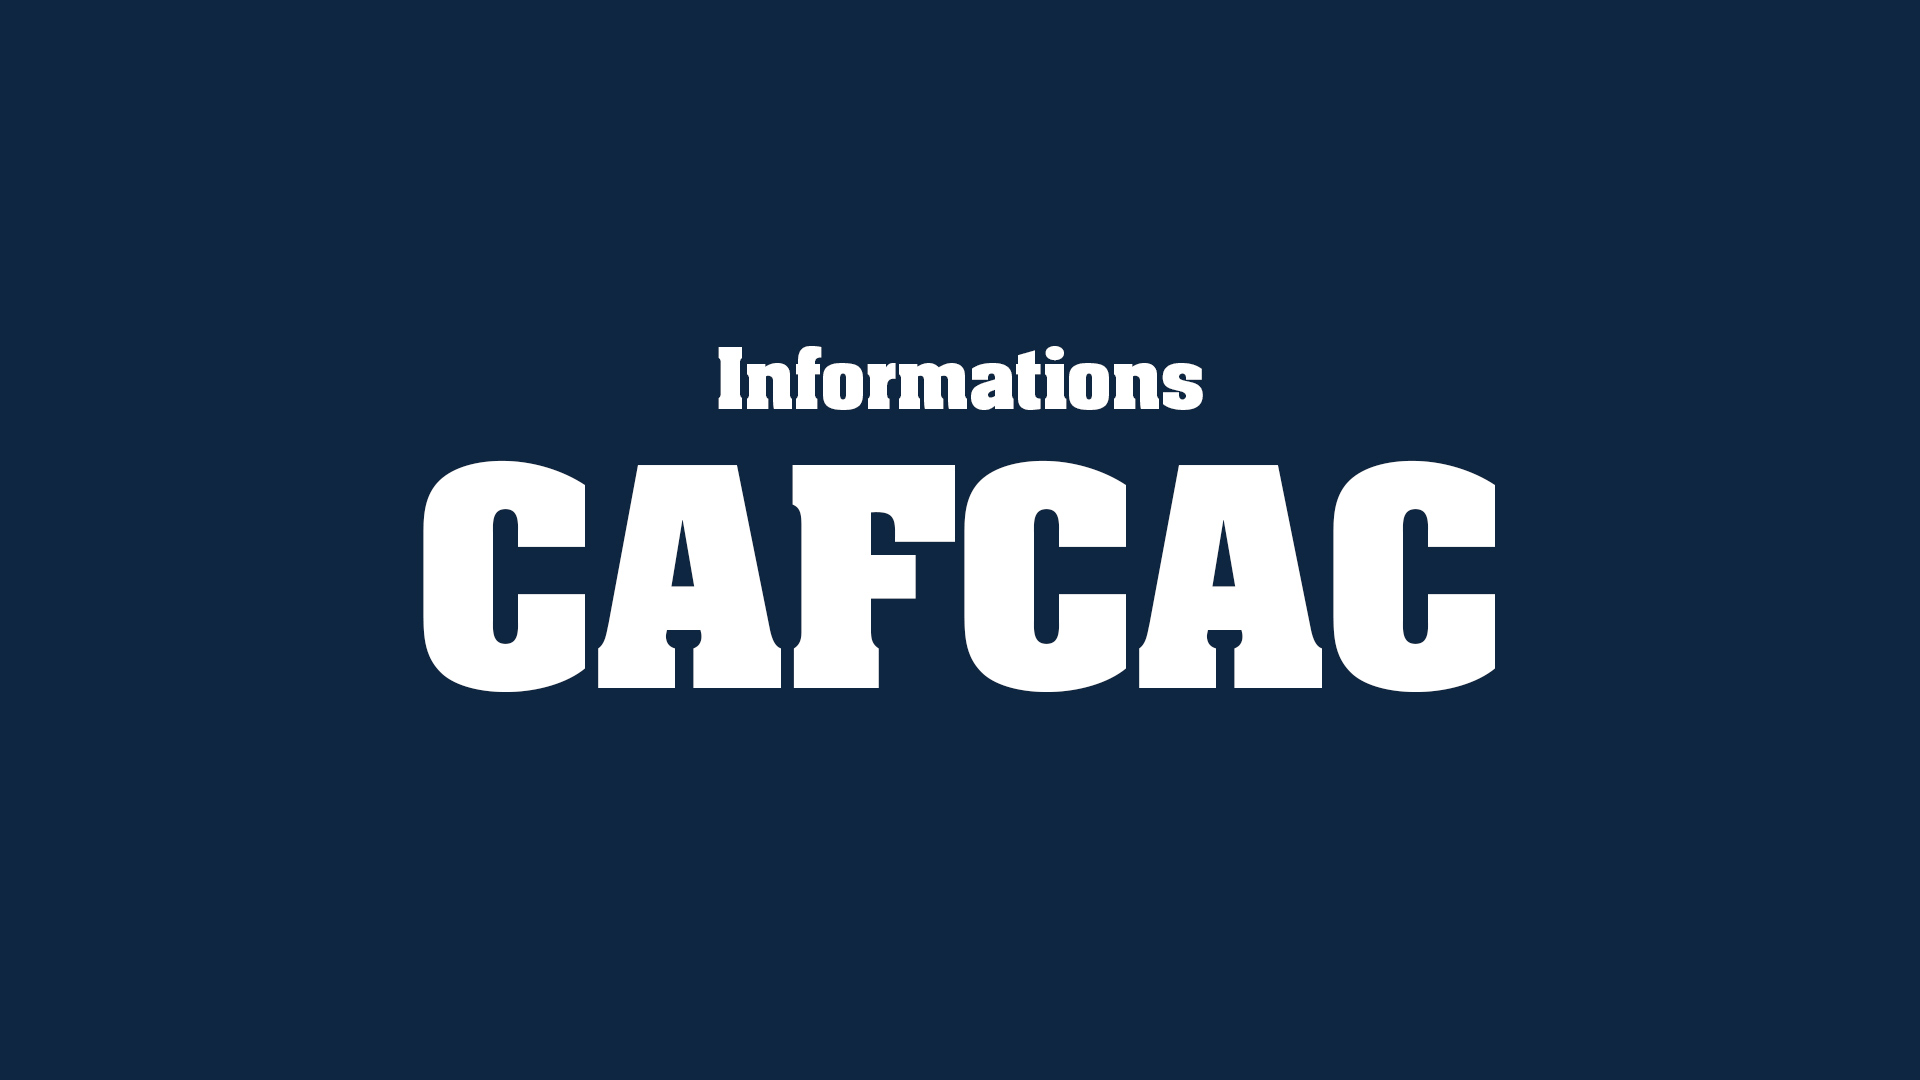 devenir_auditeur_legal-actus_infos_cafcac